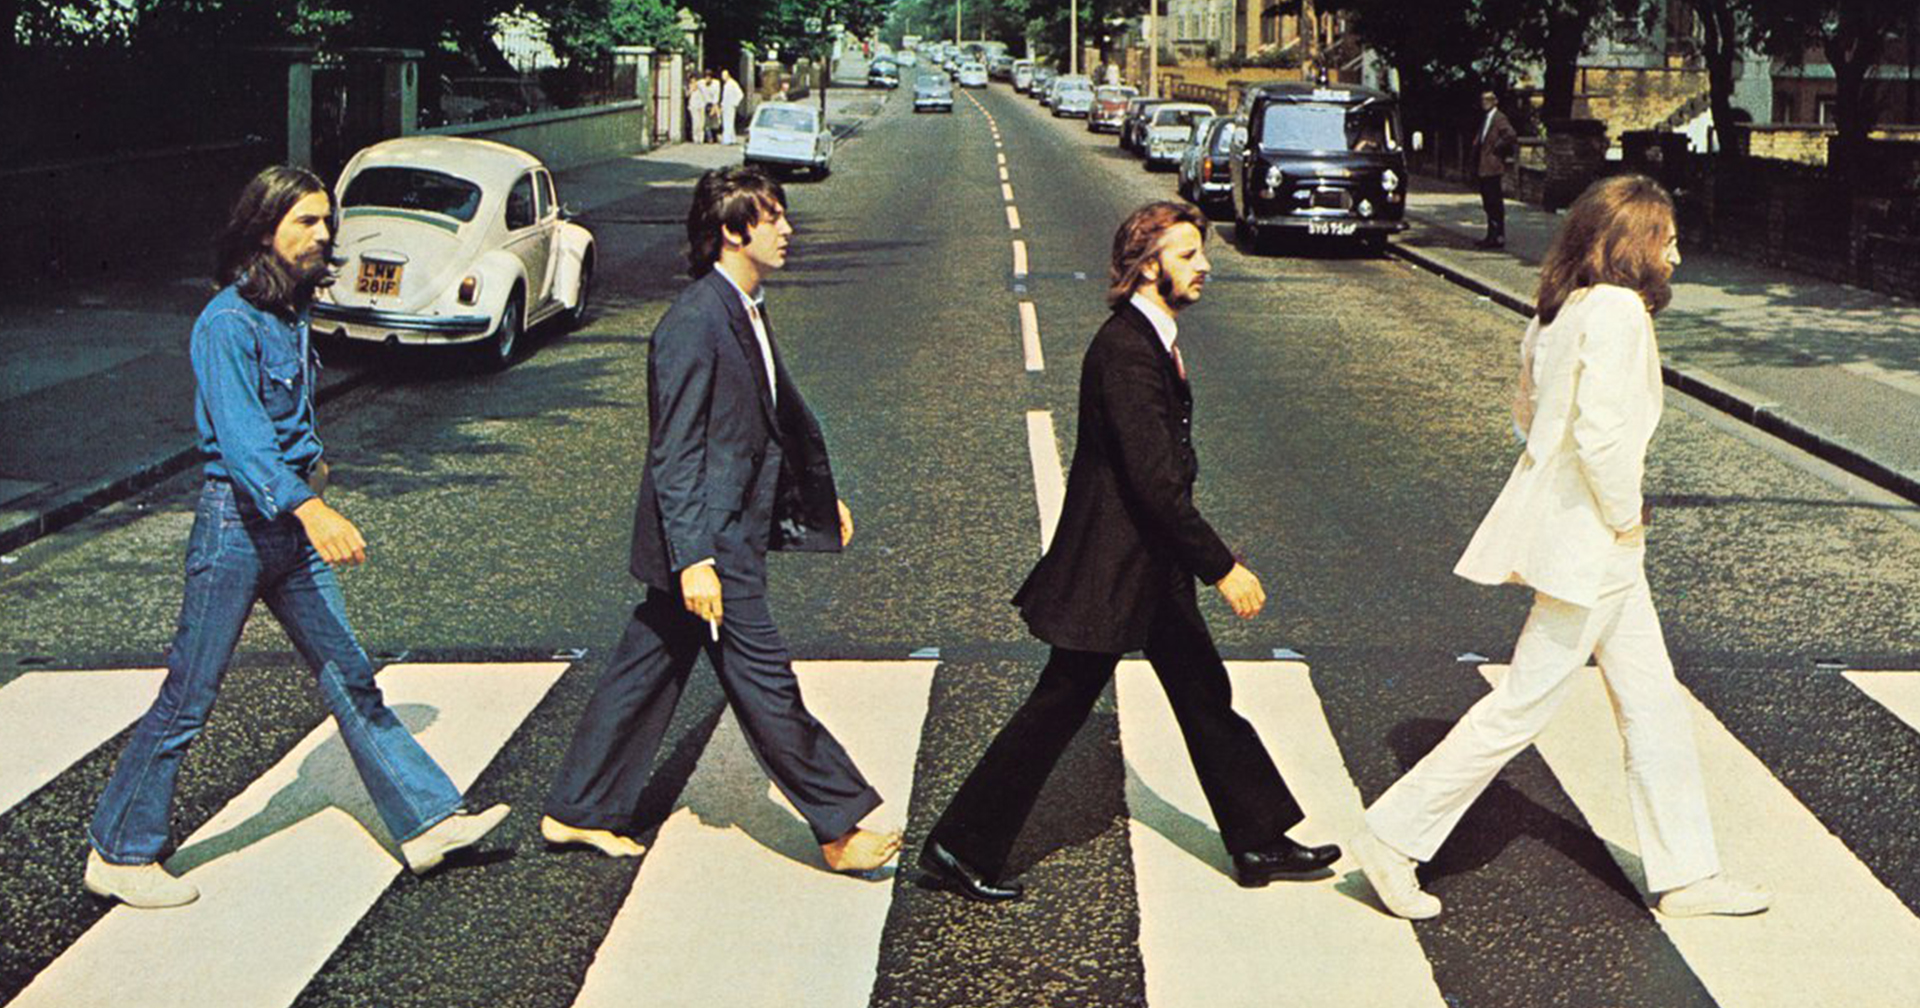 เรื่องราวของ ‘Abbey Road’ ภาพปกอัลบั้มที่สร้าง ‘ทางม้าลาย’ ธรรมดาให้โด่งดังไปทั่วโลก